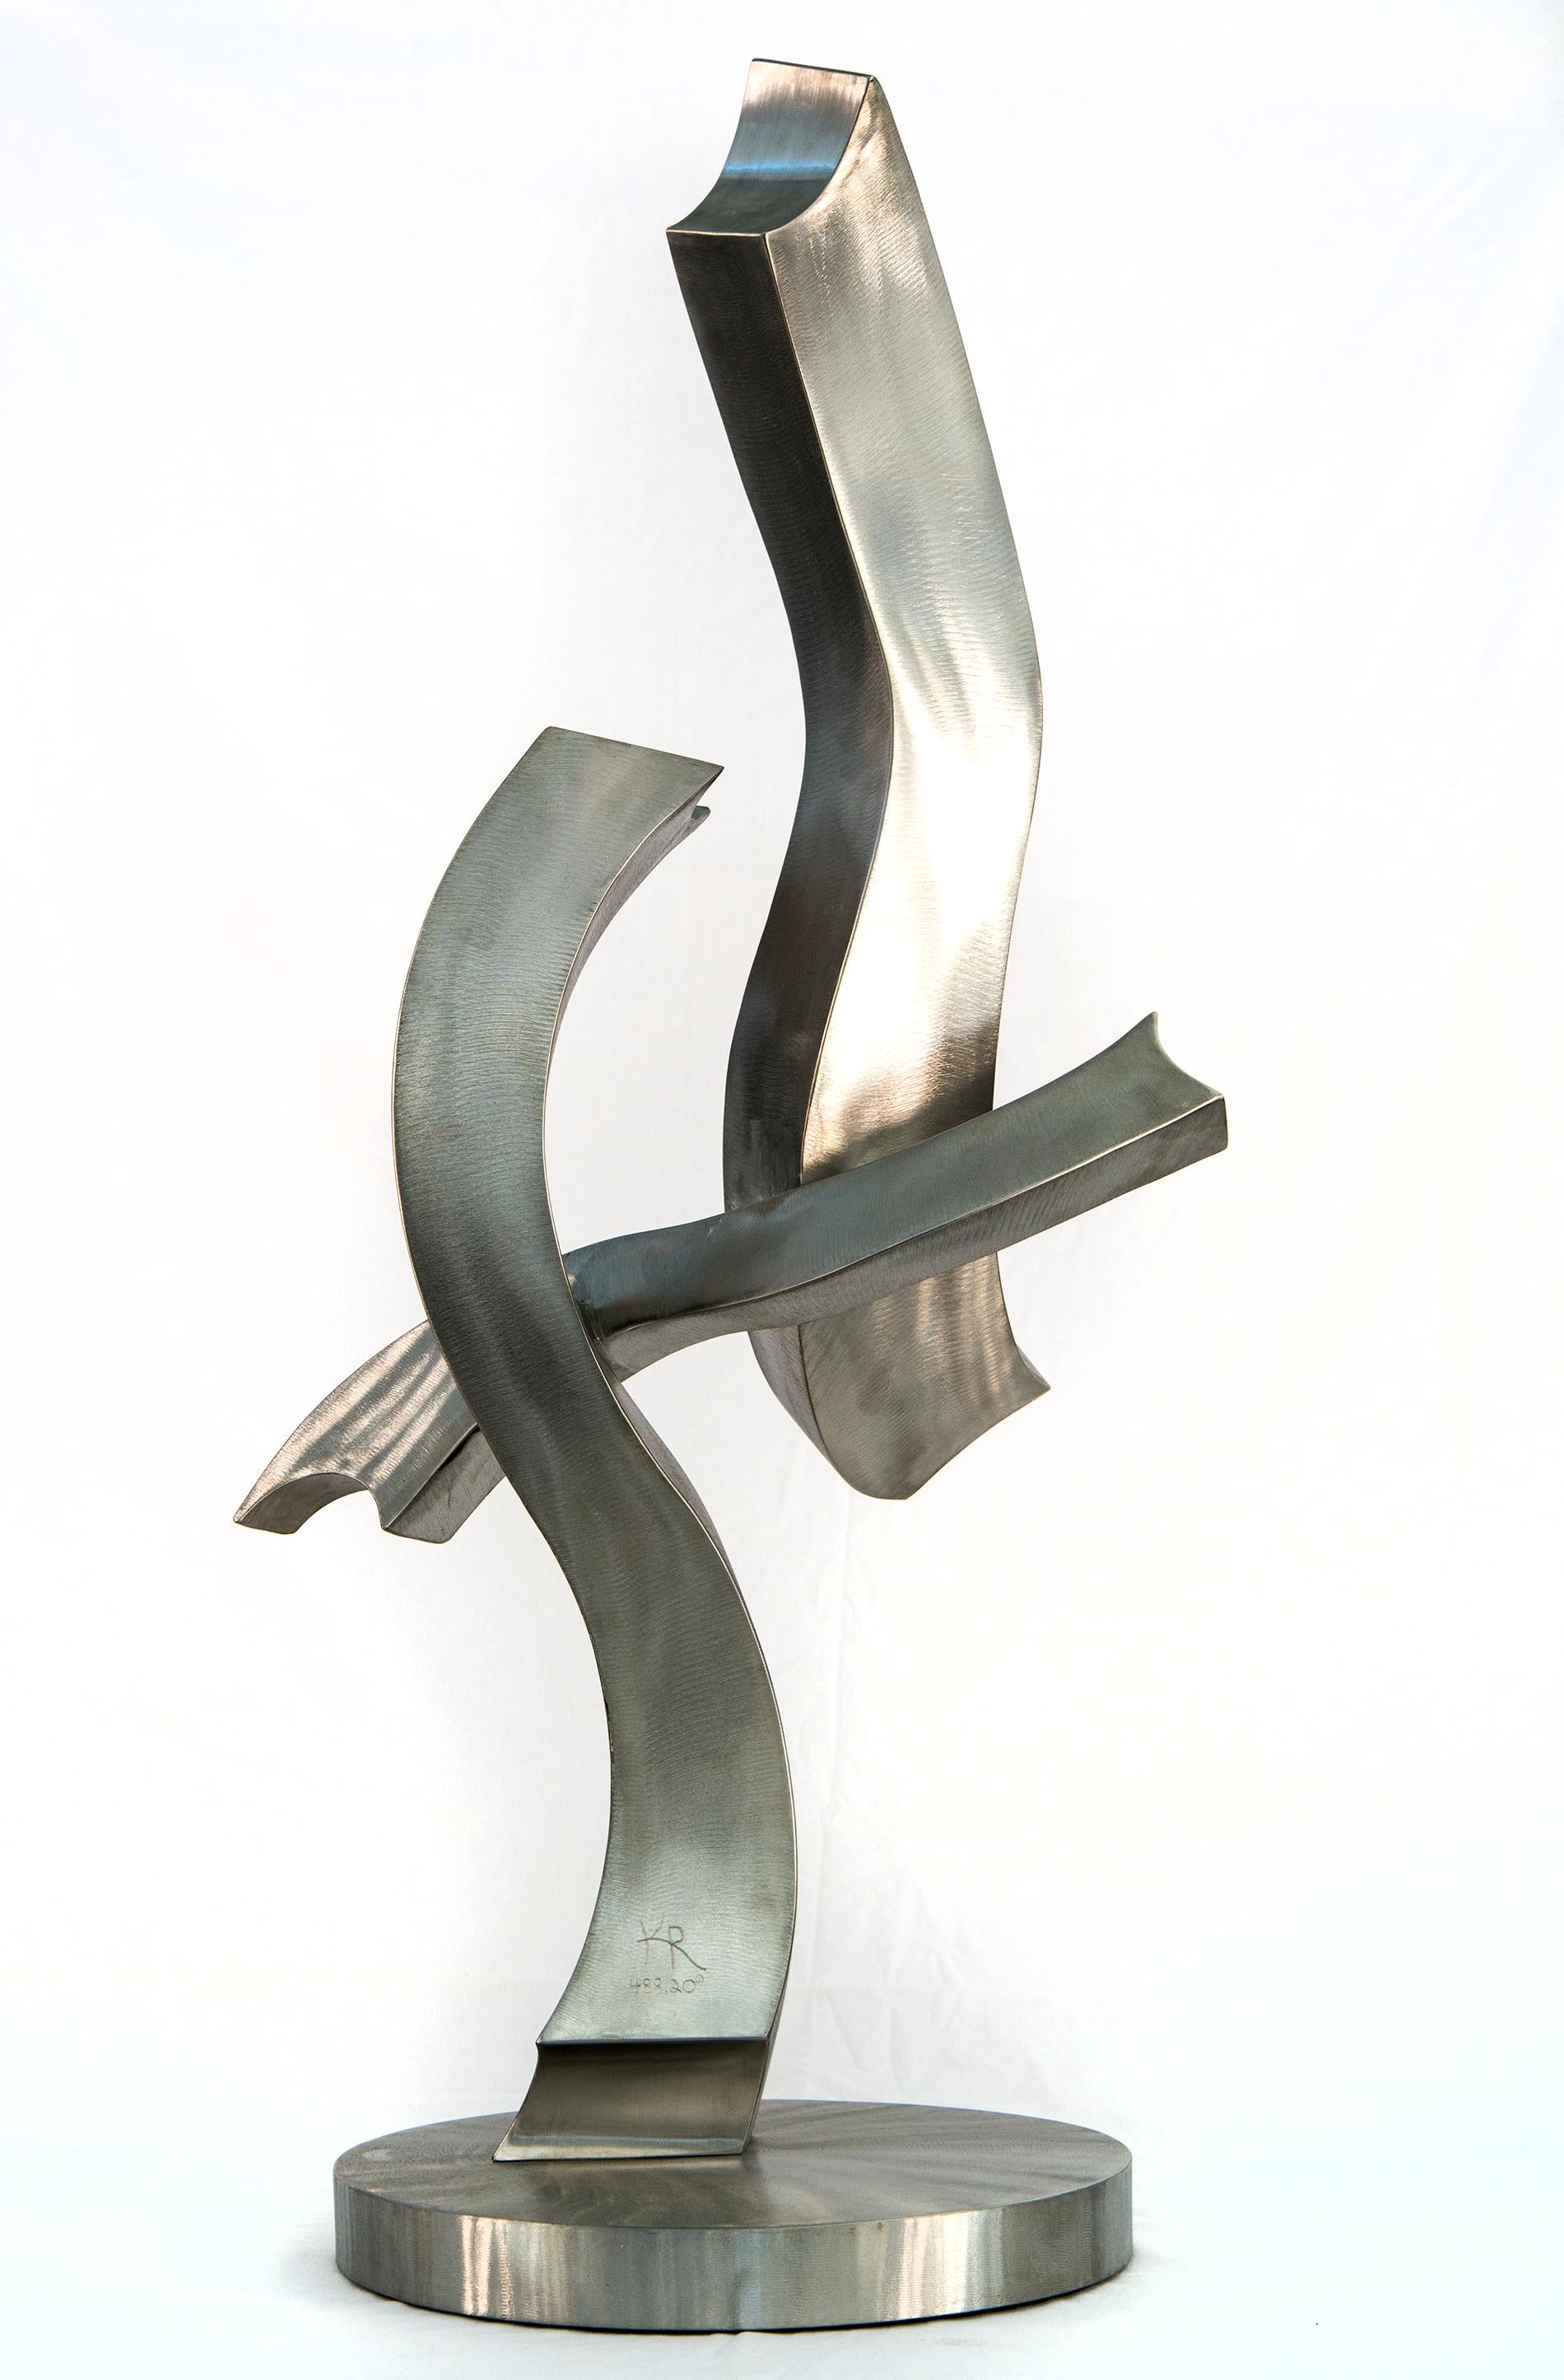 Un coup de foudre d'éclat - sculpture contemporaine et abstraite en acier inoxydable forgé - Gris Abstract Sculpture par Kevin Robb